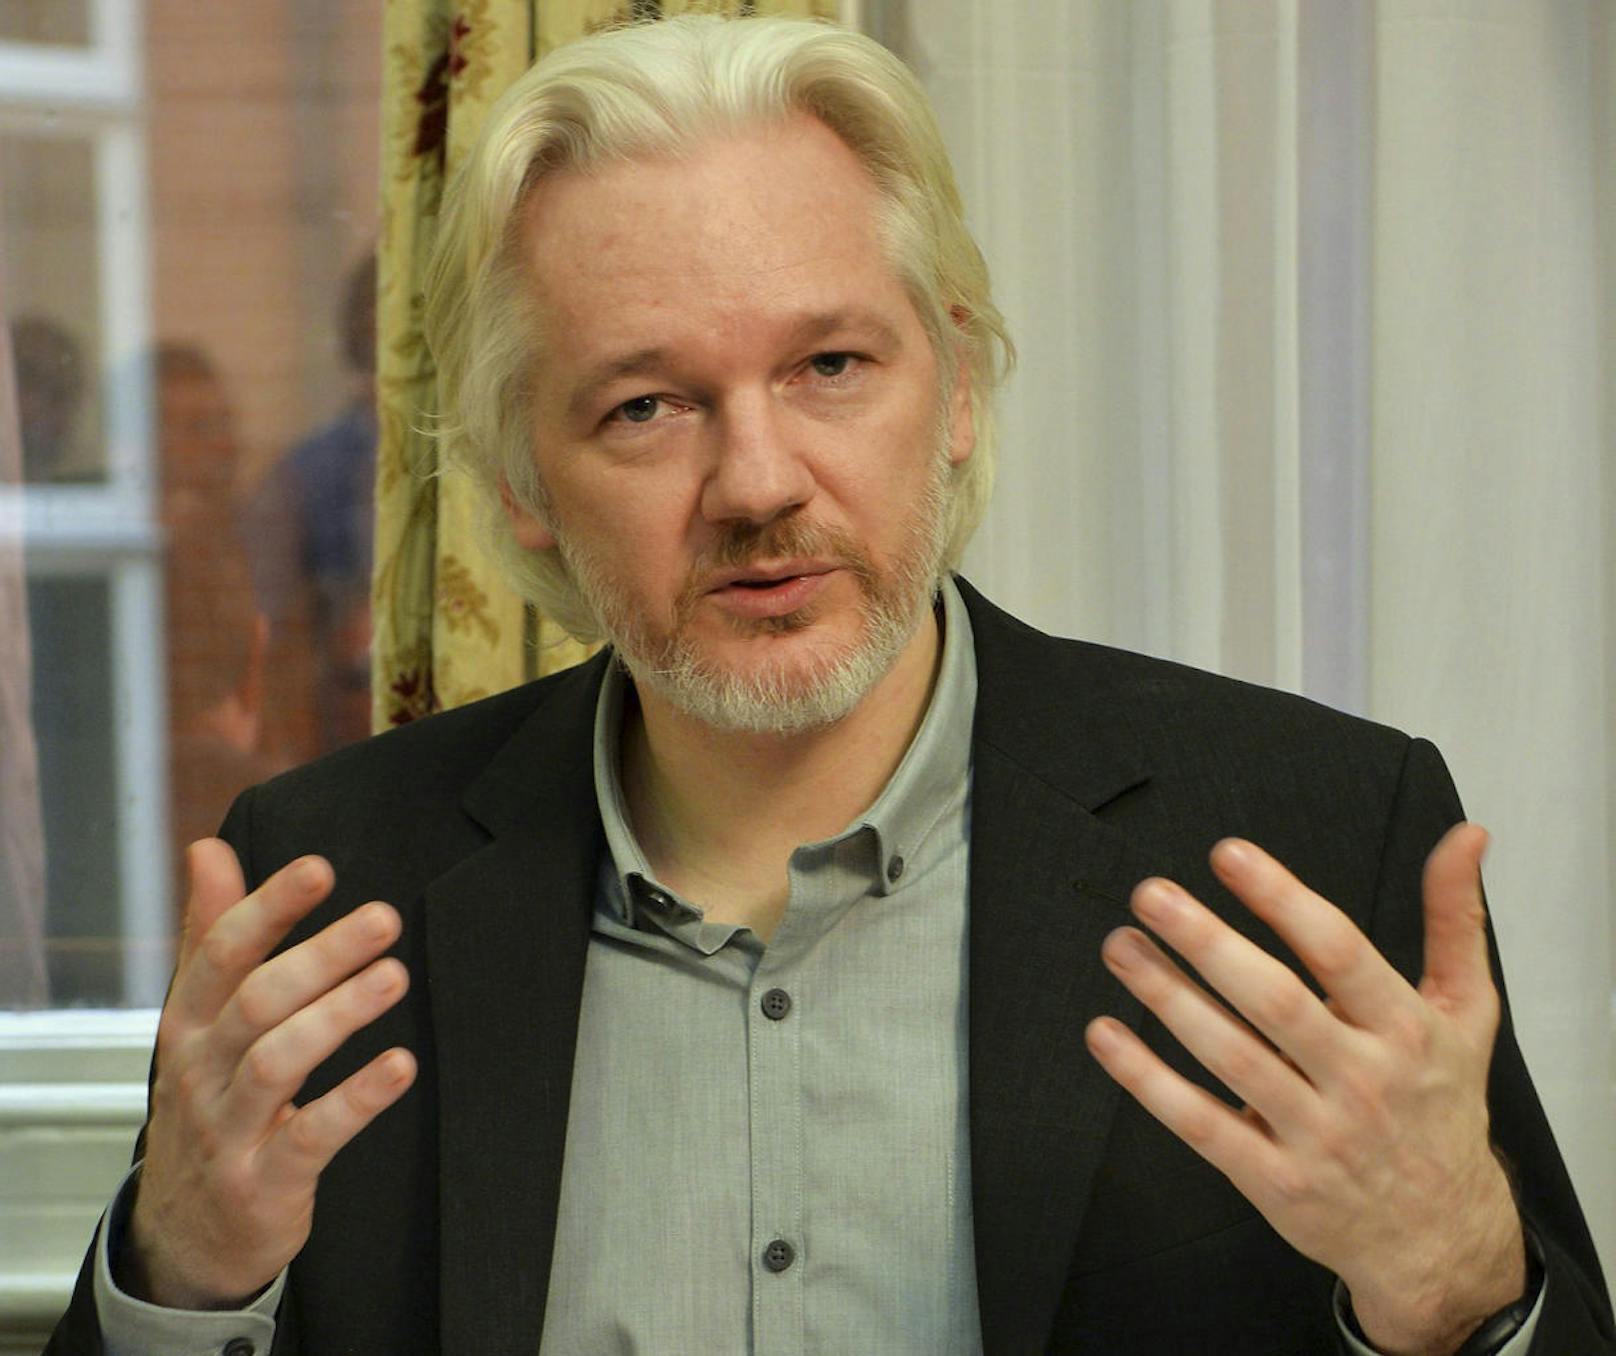 In den USA ist der Wikileaks-Gründer wegen der Veröffentlichung geheimer Dokumente und Verstößen gegen das Anti-Spionage-Gesetz angeklagt.